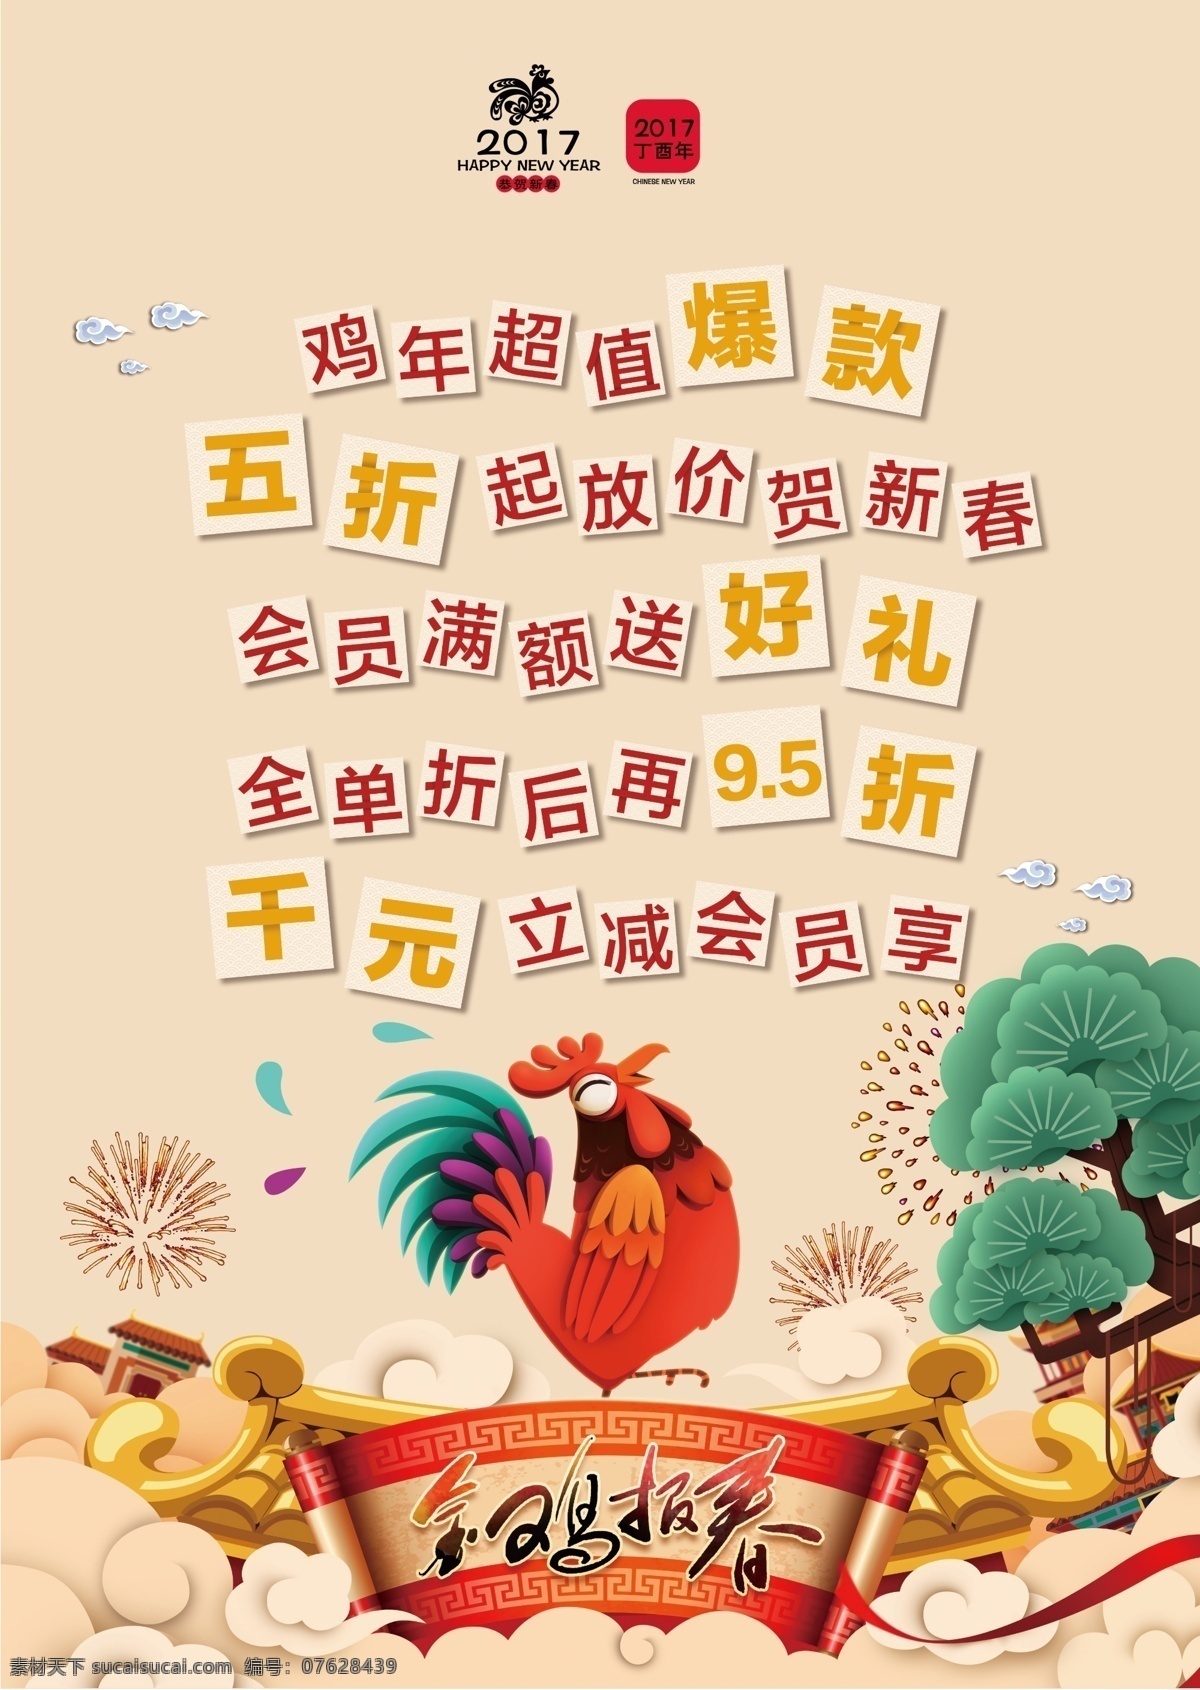 爆款促销海报 金鸡报晓 节日 宣传单 dm单 节日气氛